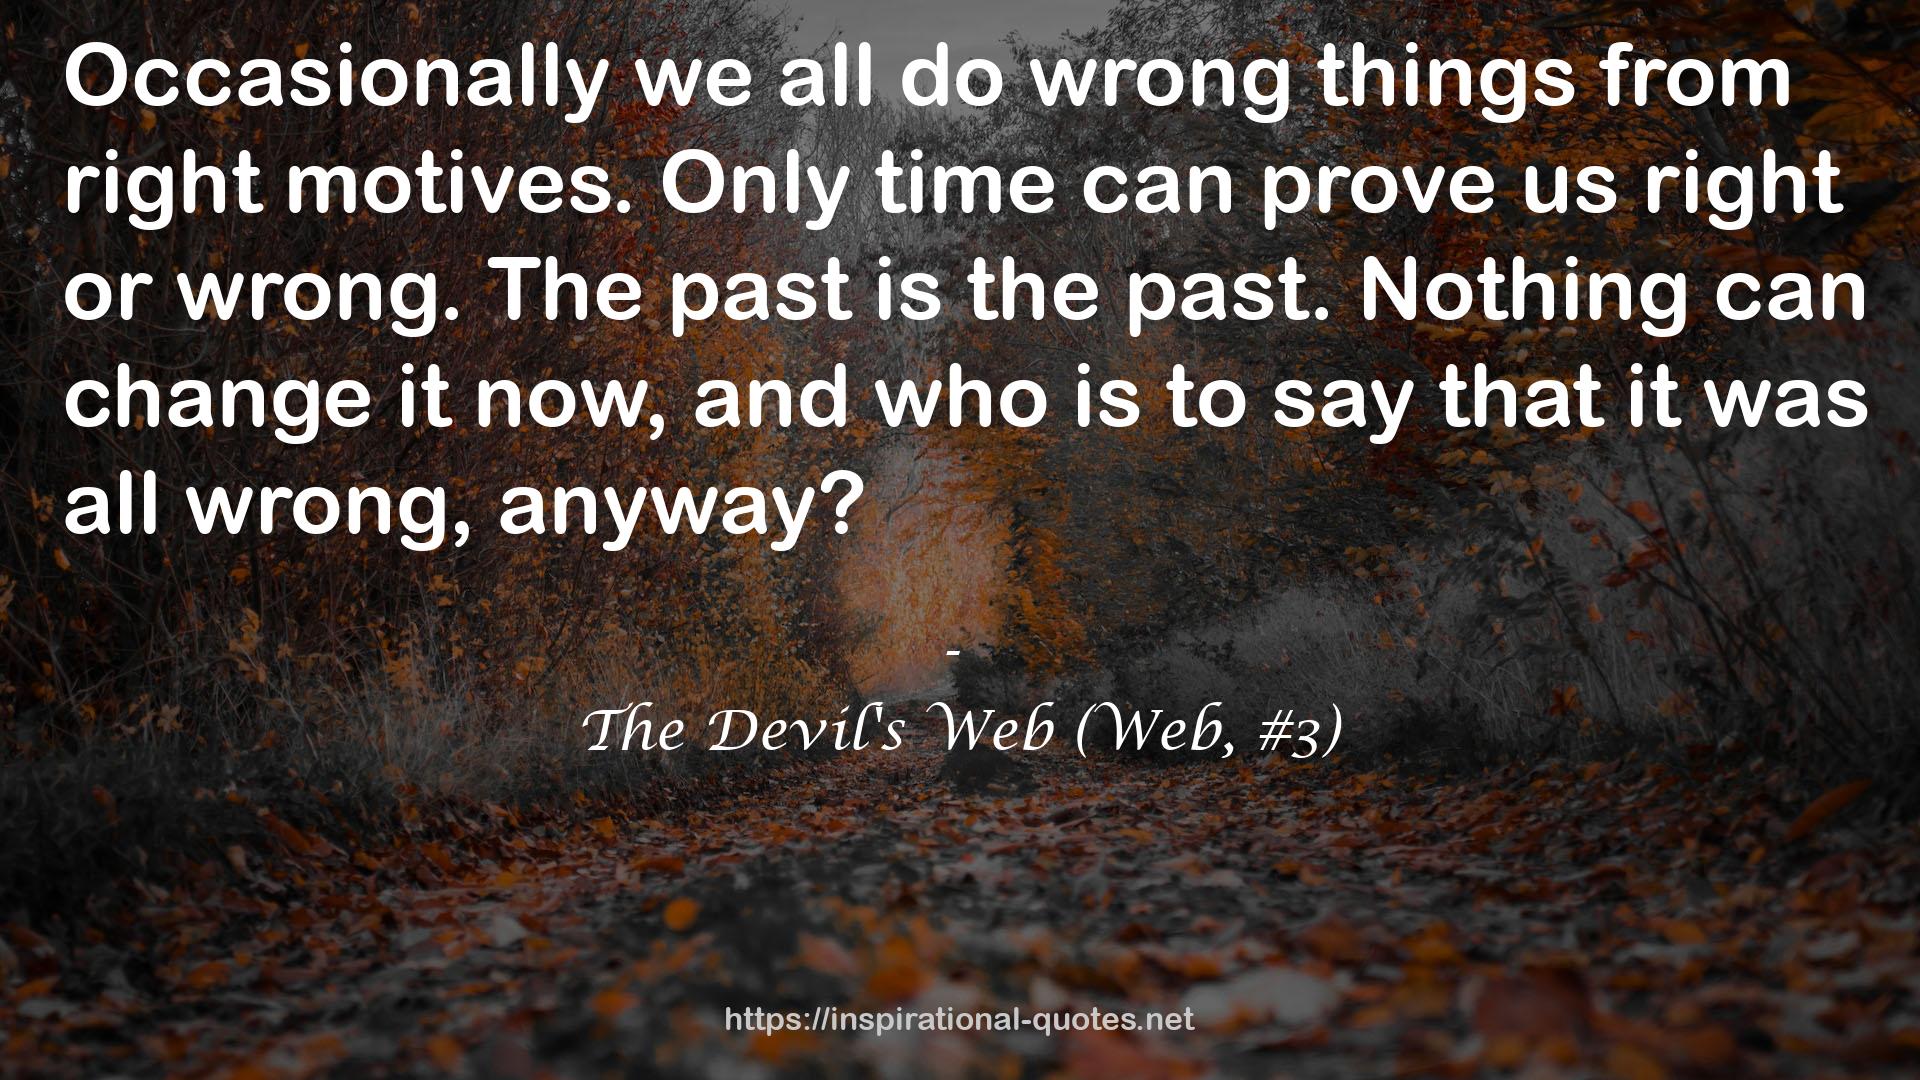 The Devil's Web (Web, #3) QUOTES